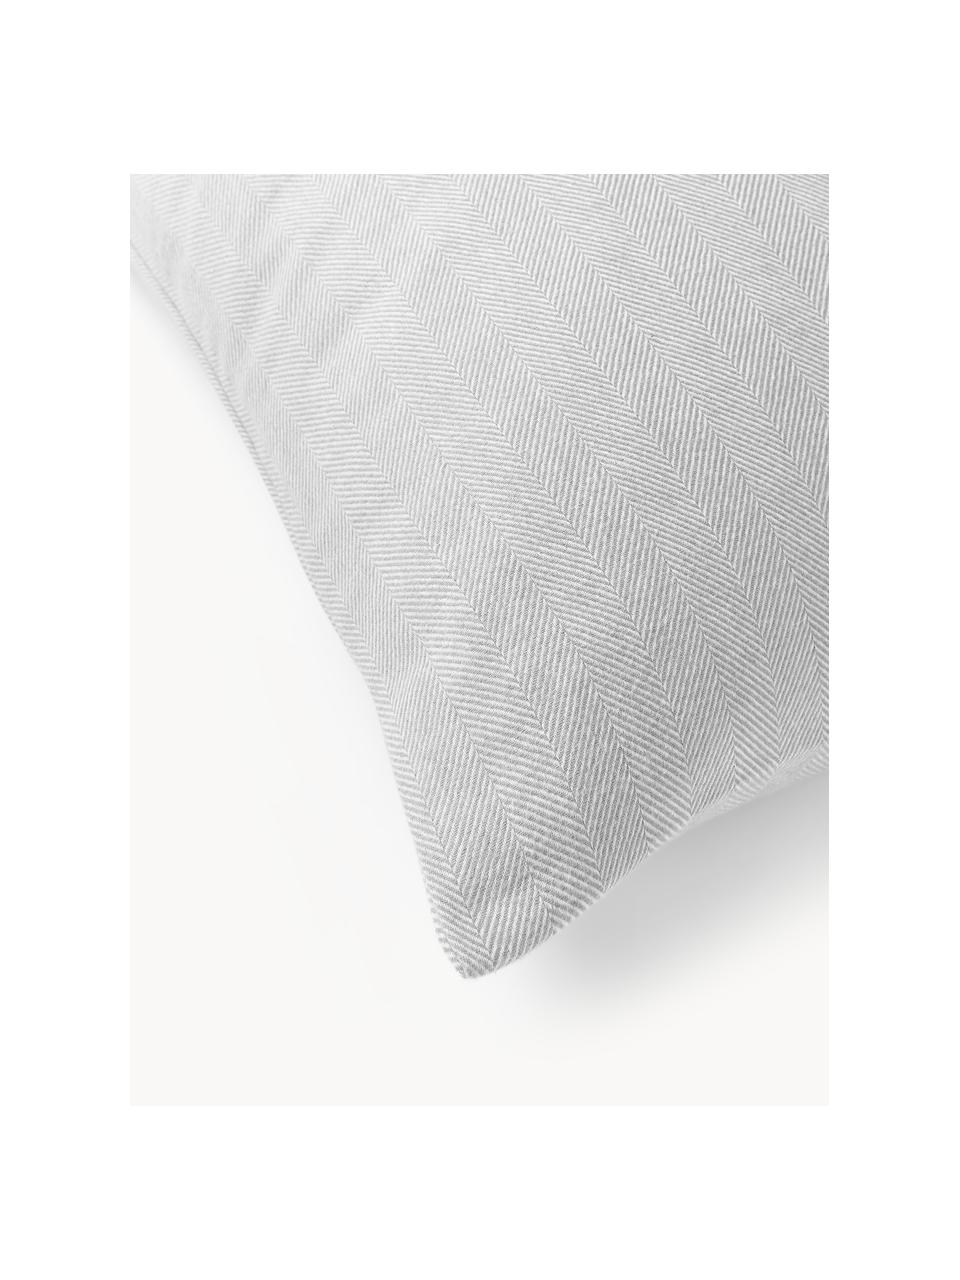 Funda de almohada de franela con punto espiga Wanda, Gris claro, An 45 x L 110 cm